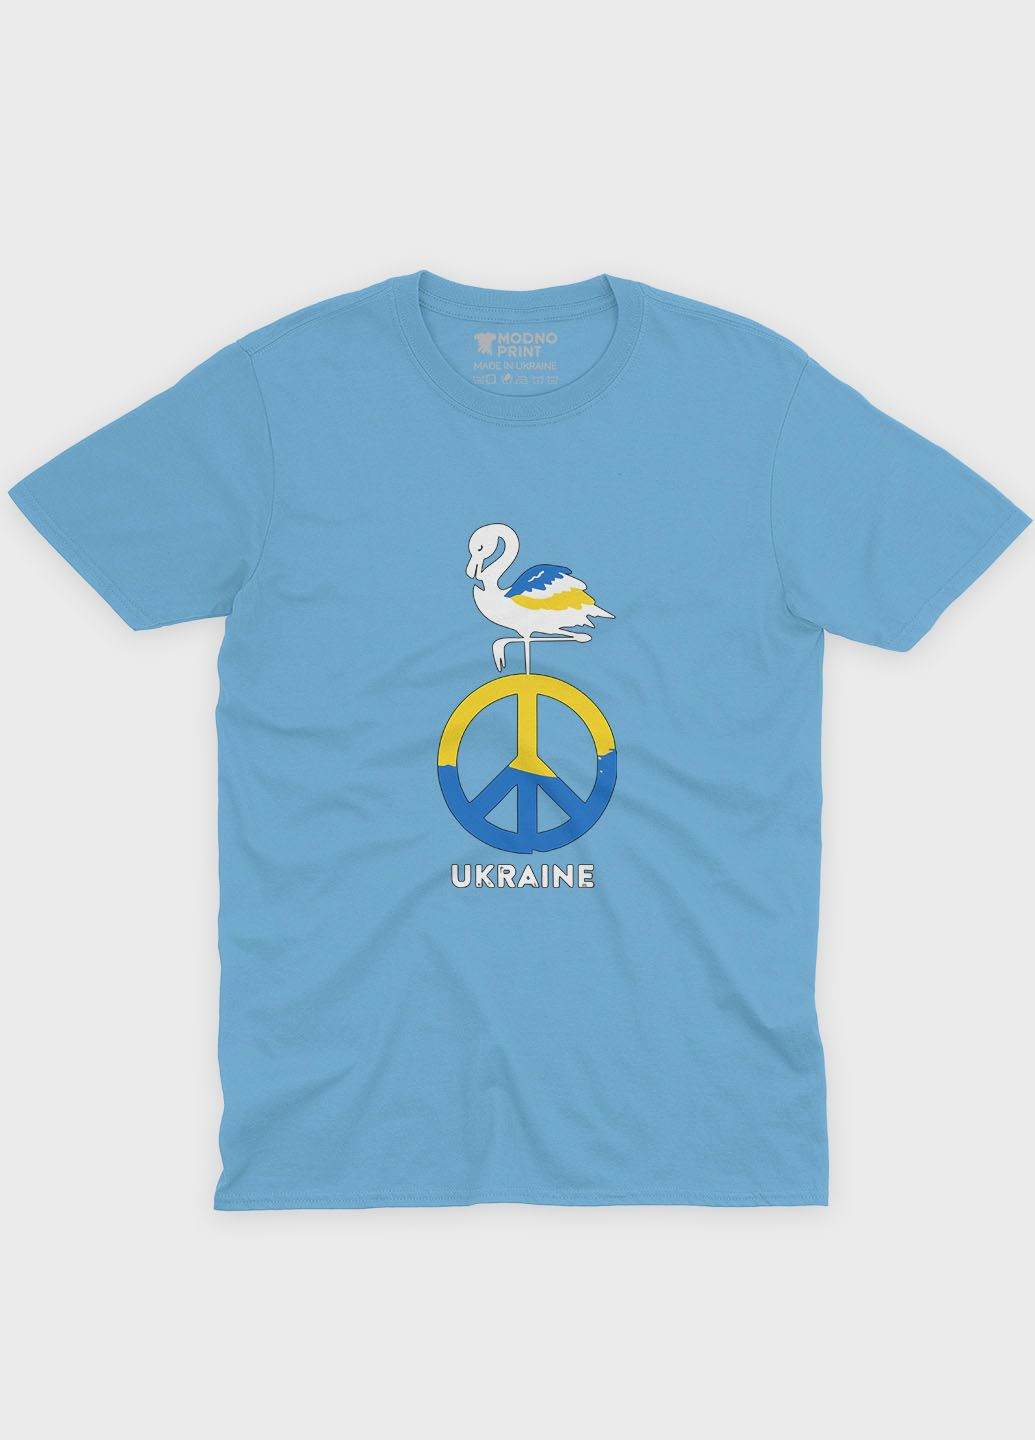 Голубая демисезонная футболка для мальчика с патриотическим принтом ukraine (ts001-3-lbl-005-1-075-b) Modno